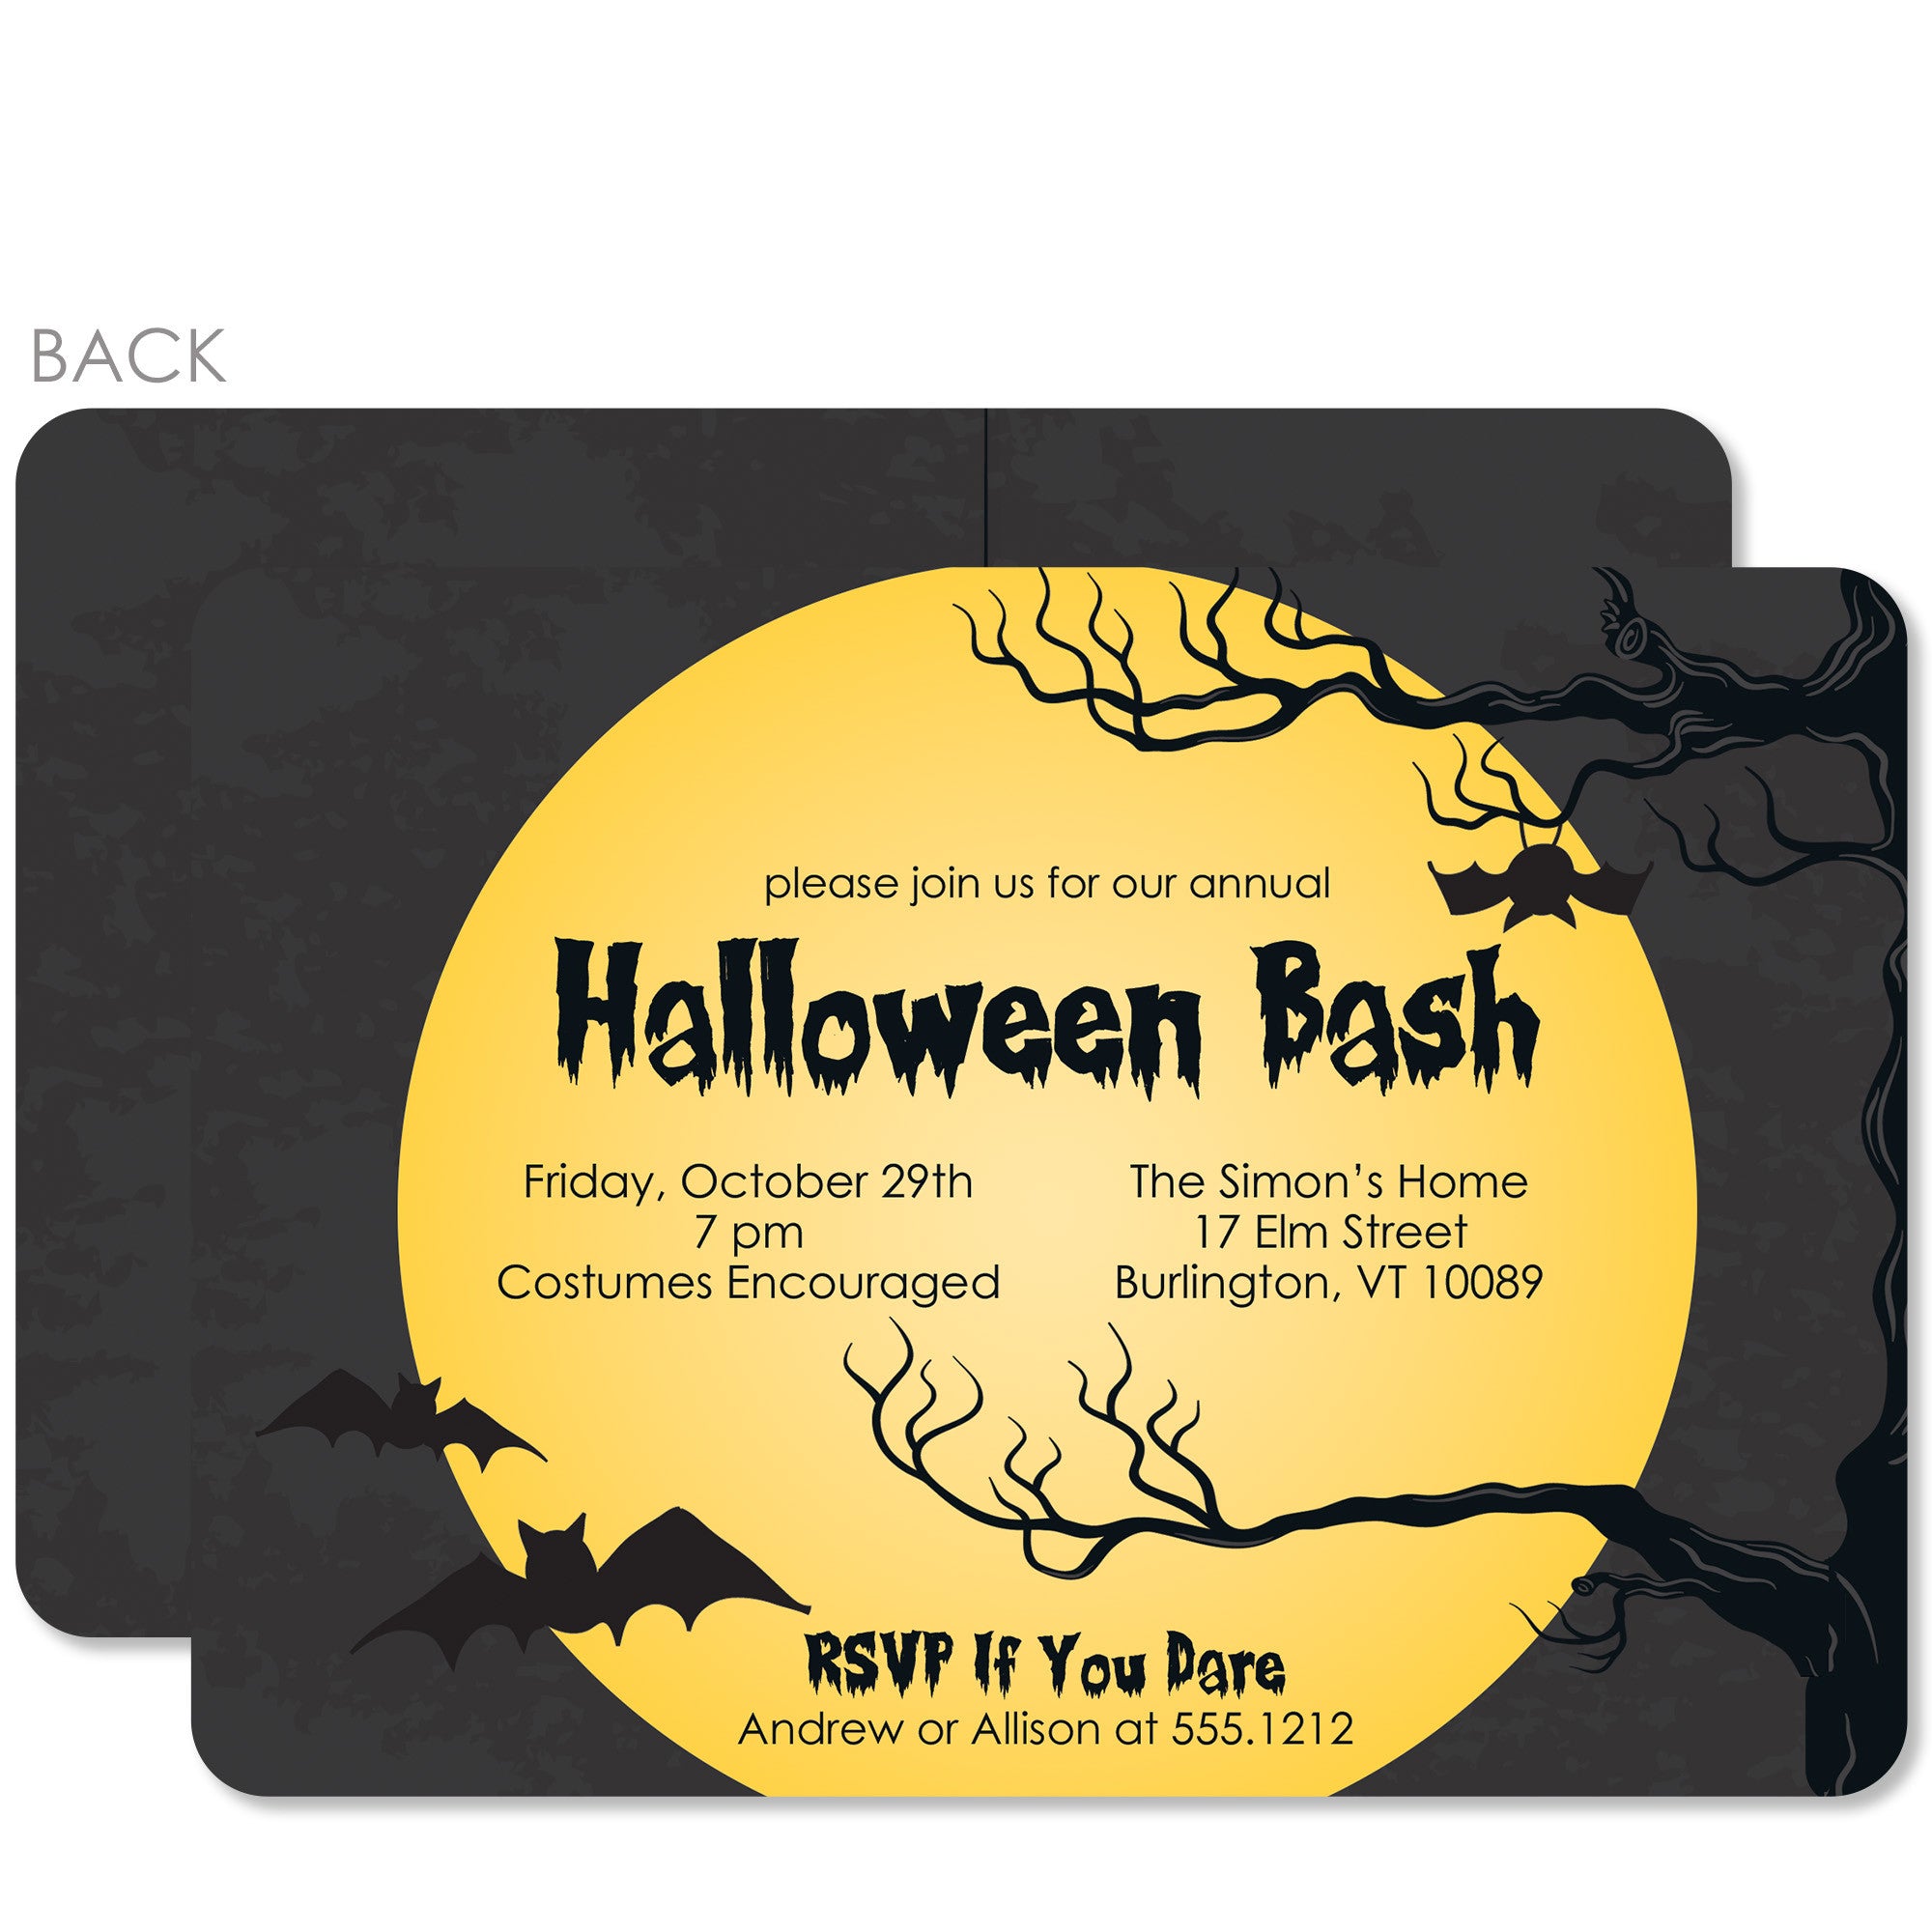 halloween invitation ideas